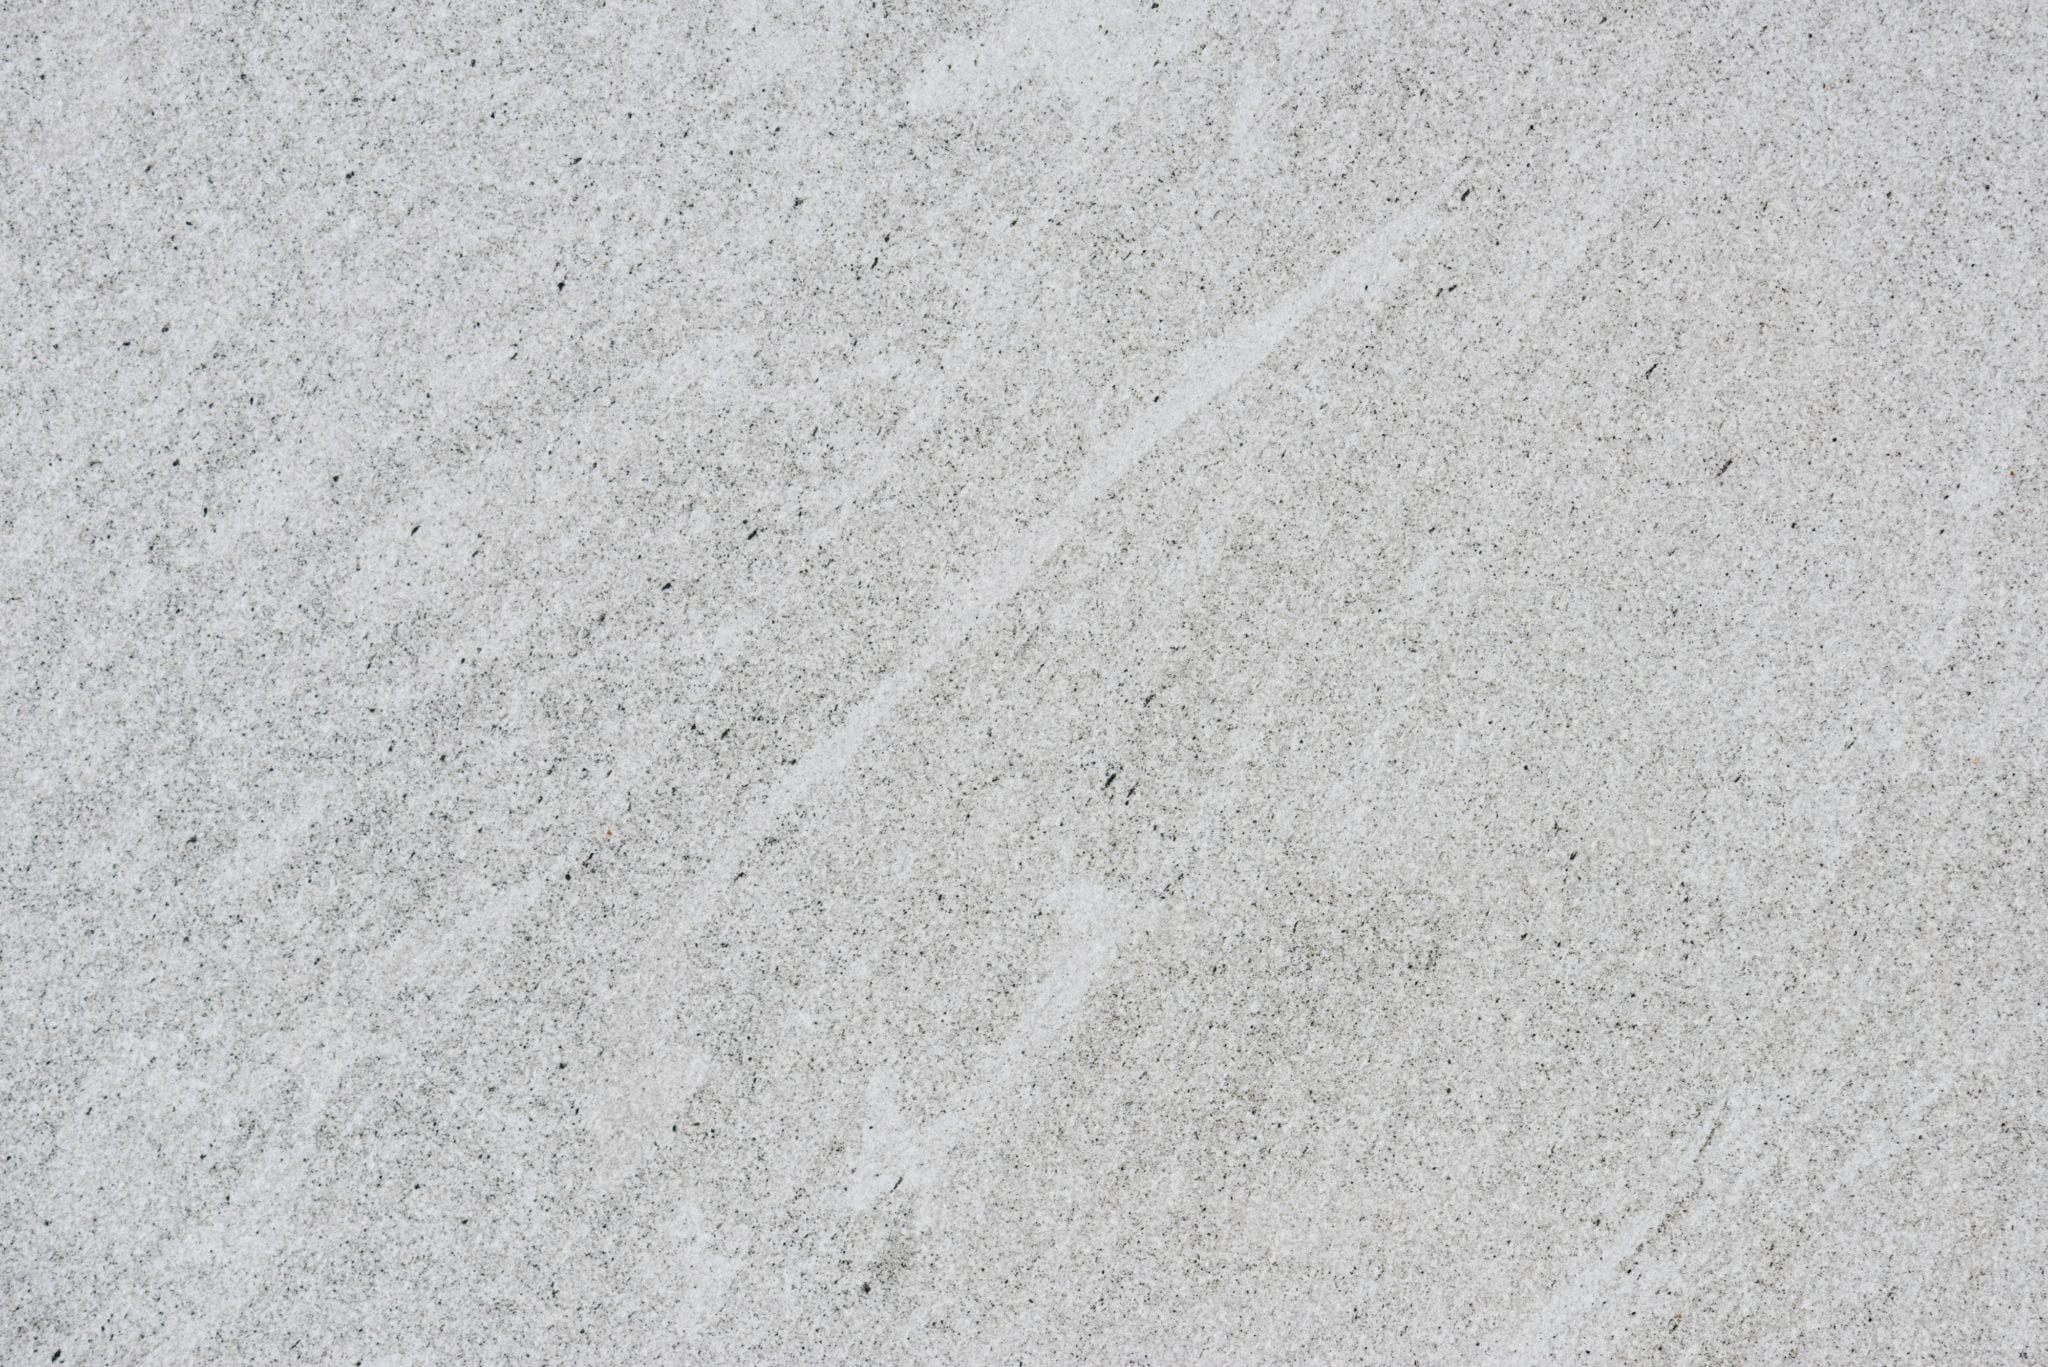 cement-close-up-concrete-1619843